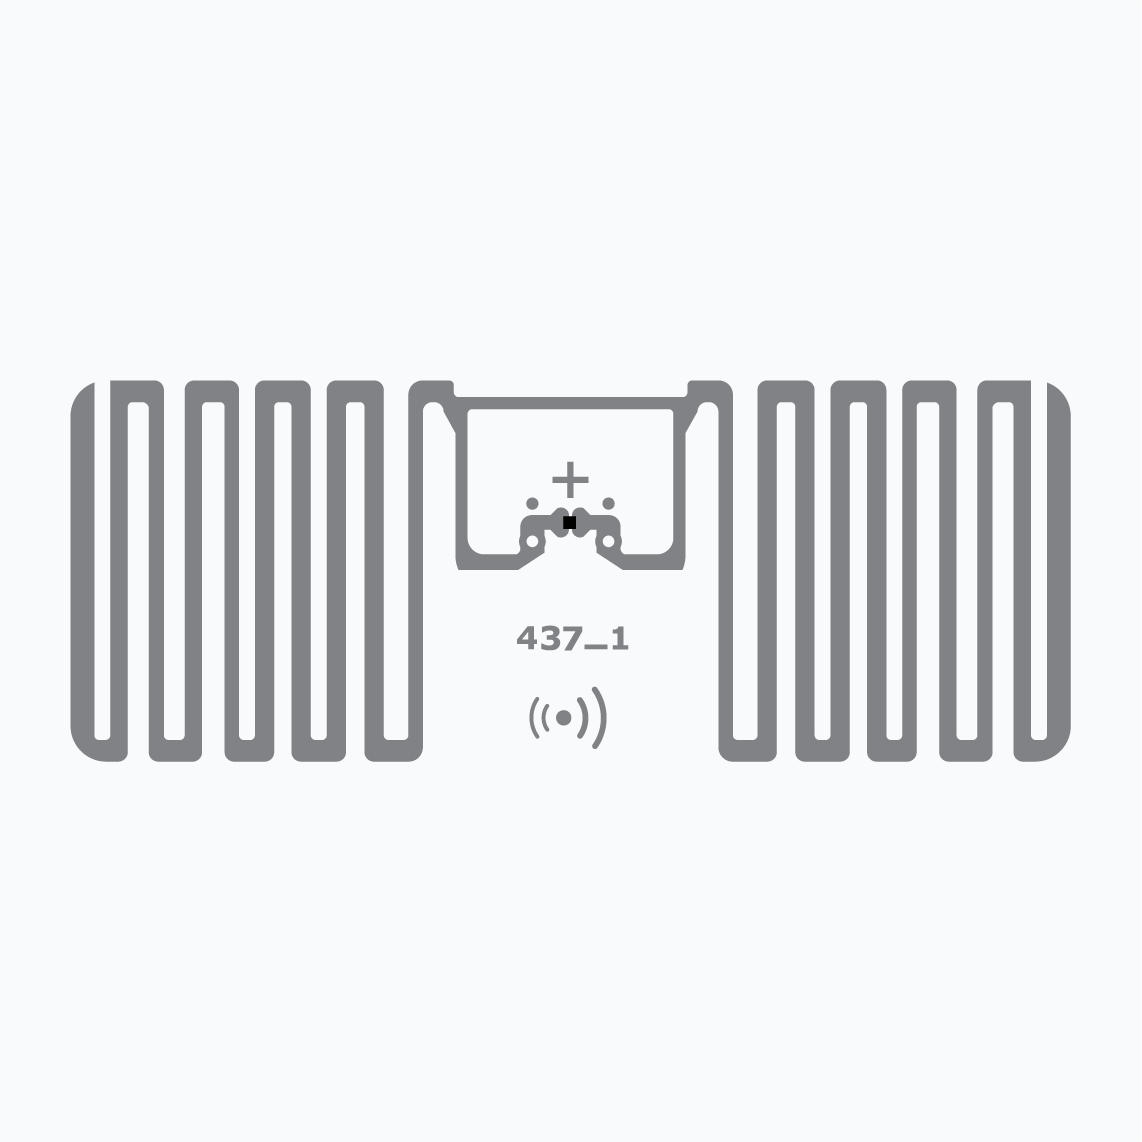 UHF RFID Inlay: Miniweb, Monza R6-P